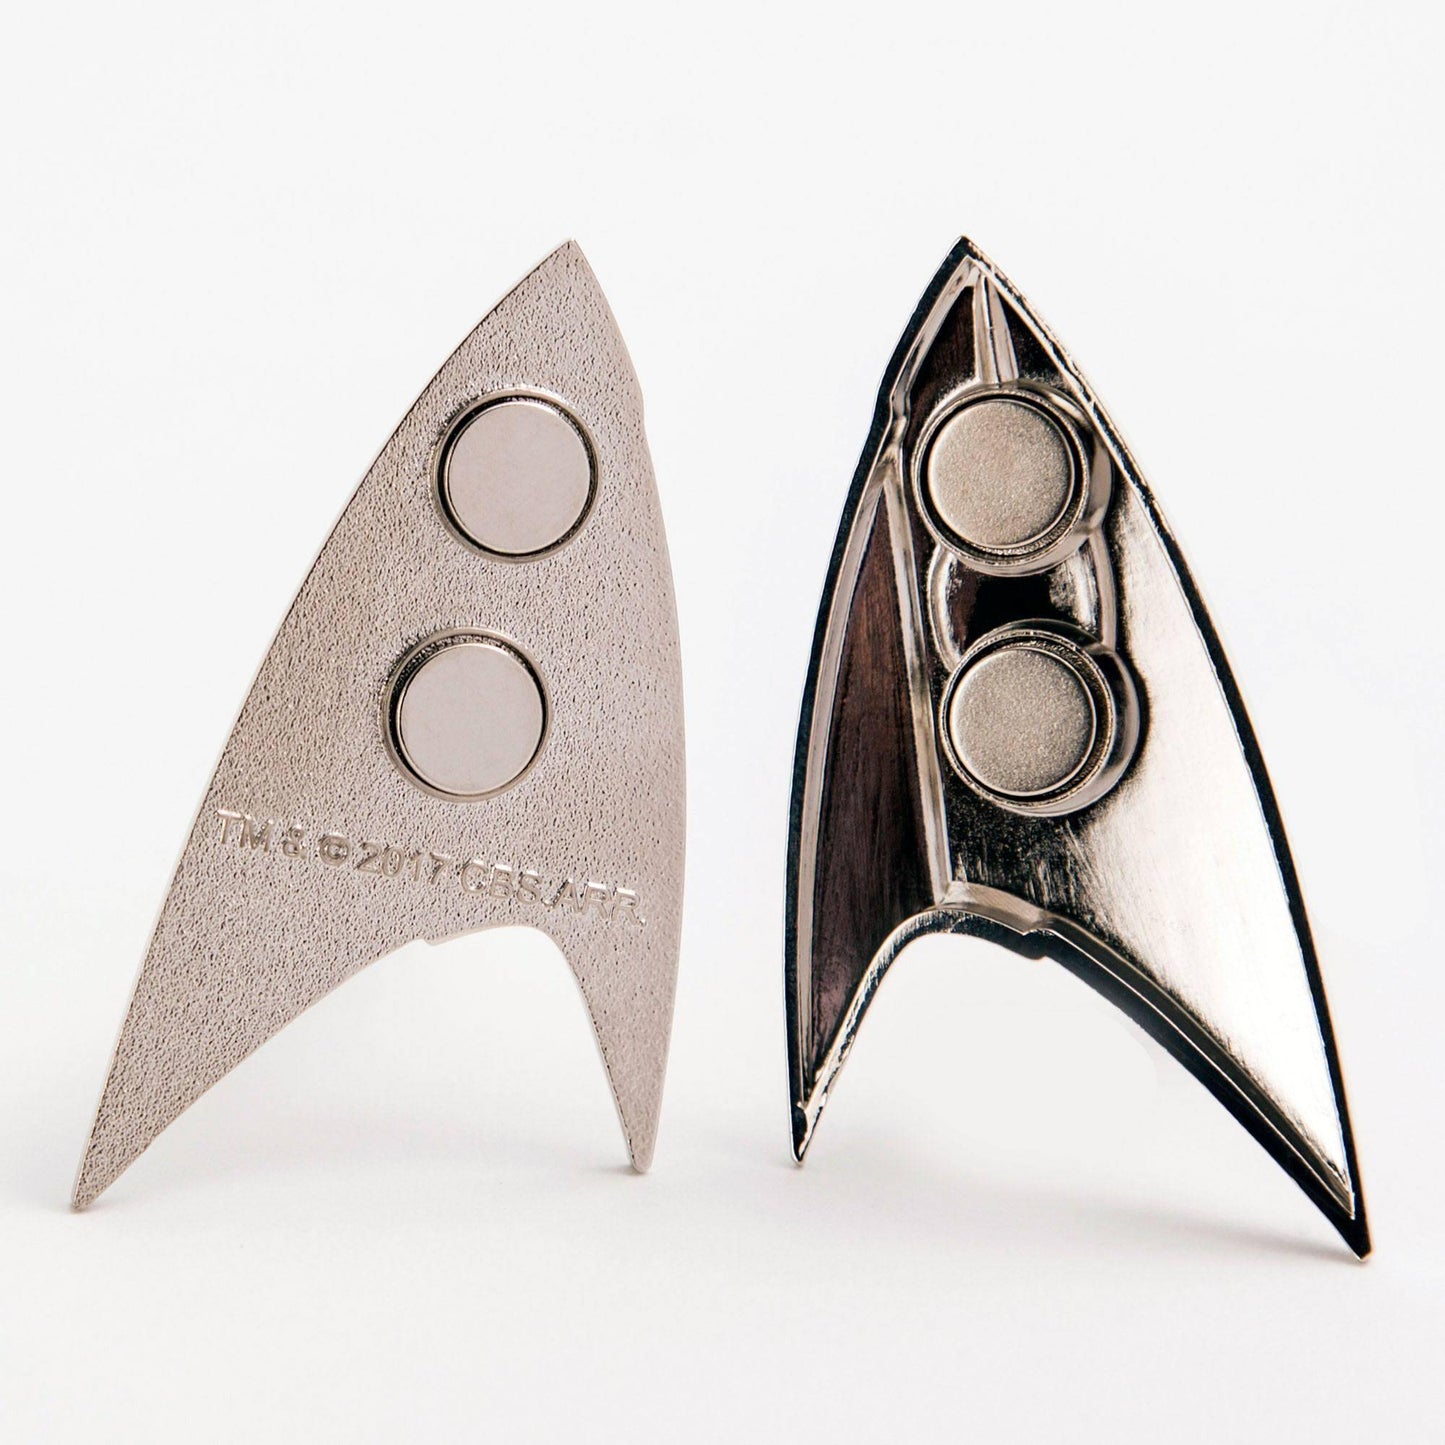 Star Trek Discovery Replik 1/1 Sternenflottenabzeichen Wissenschaft magnetisch